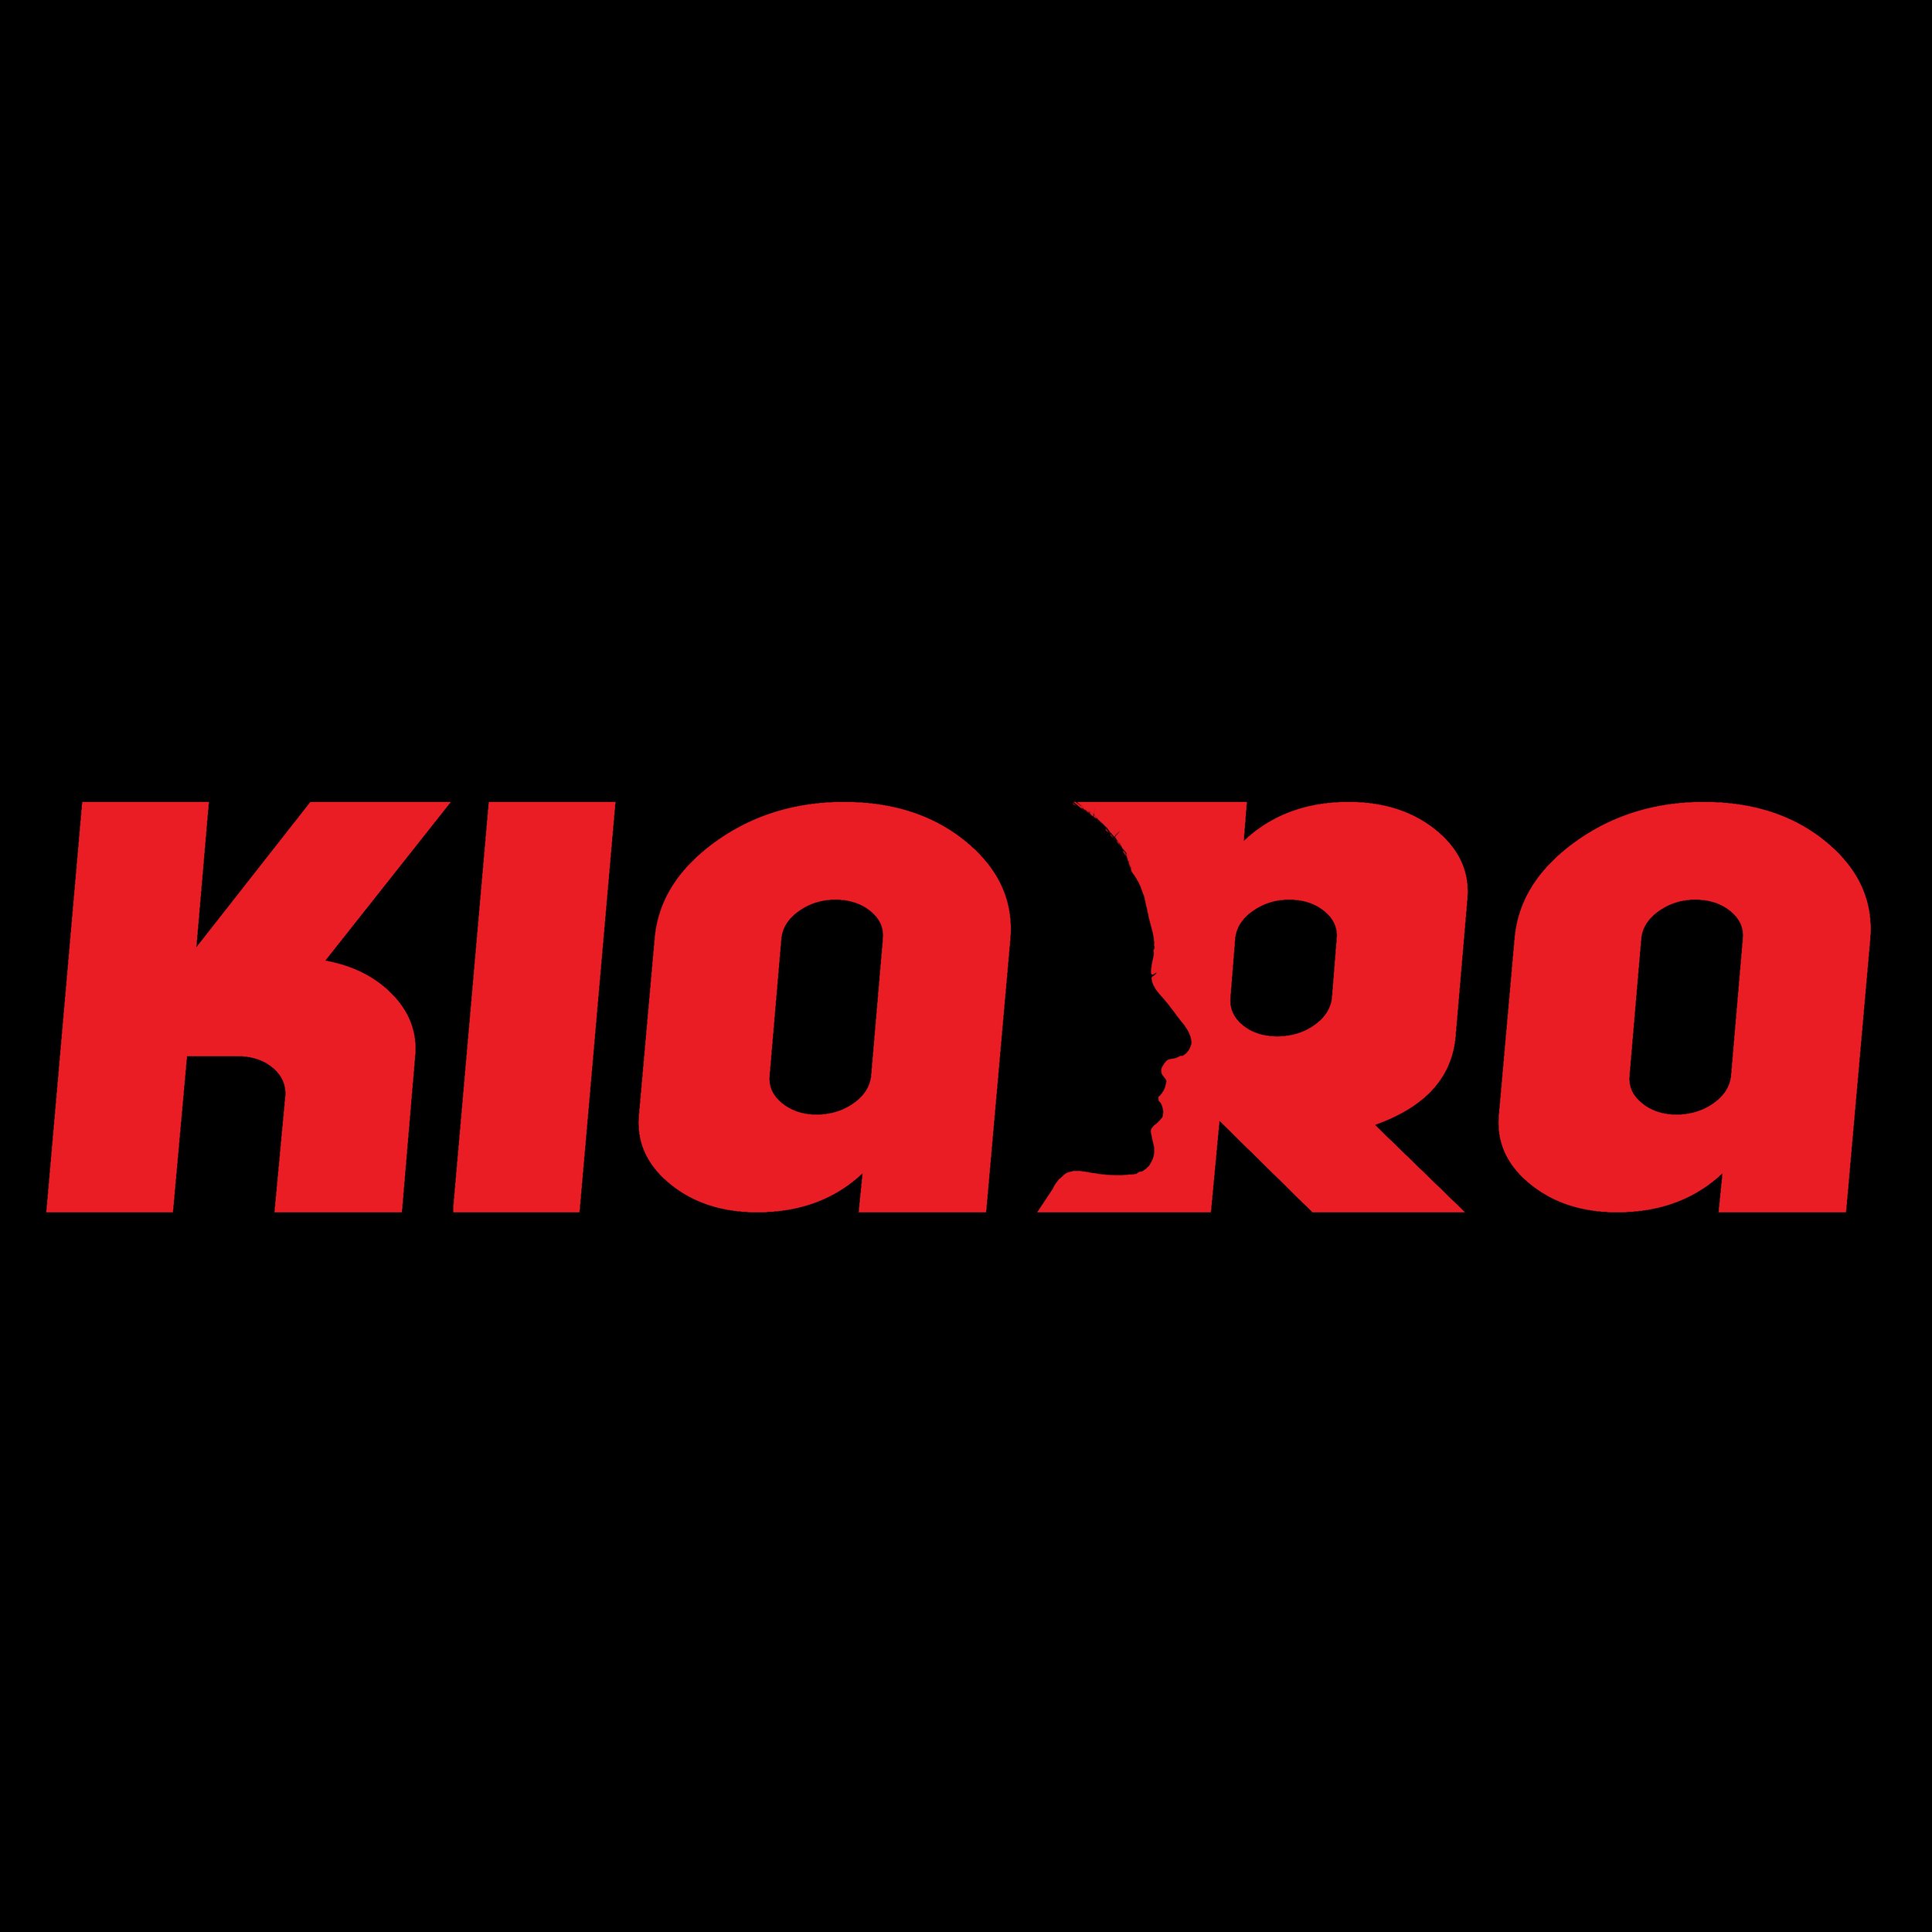 Kiara-Logo-44-555.jpg